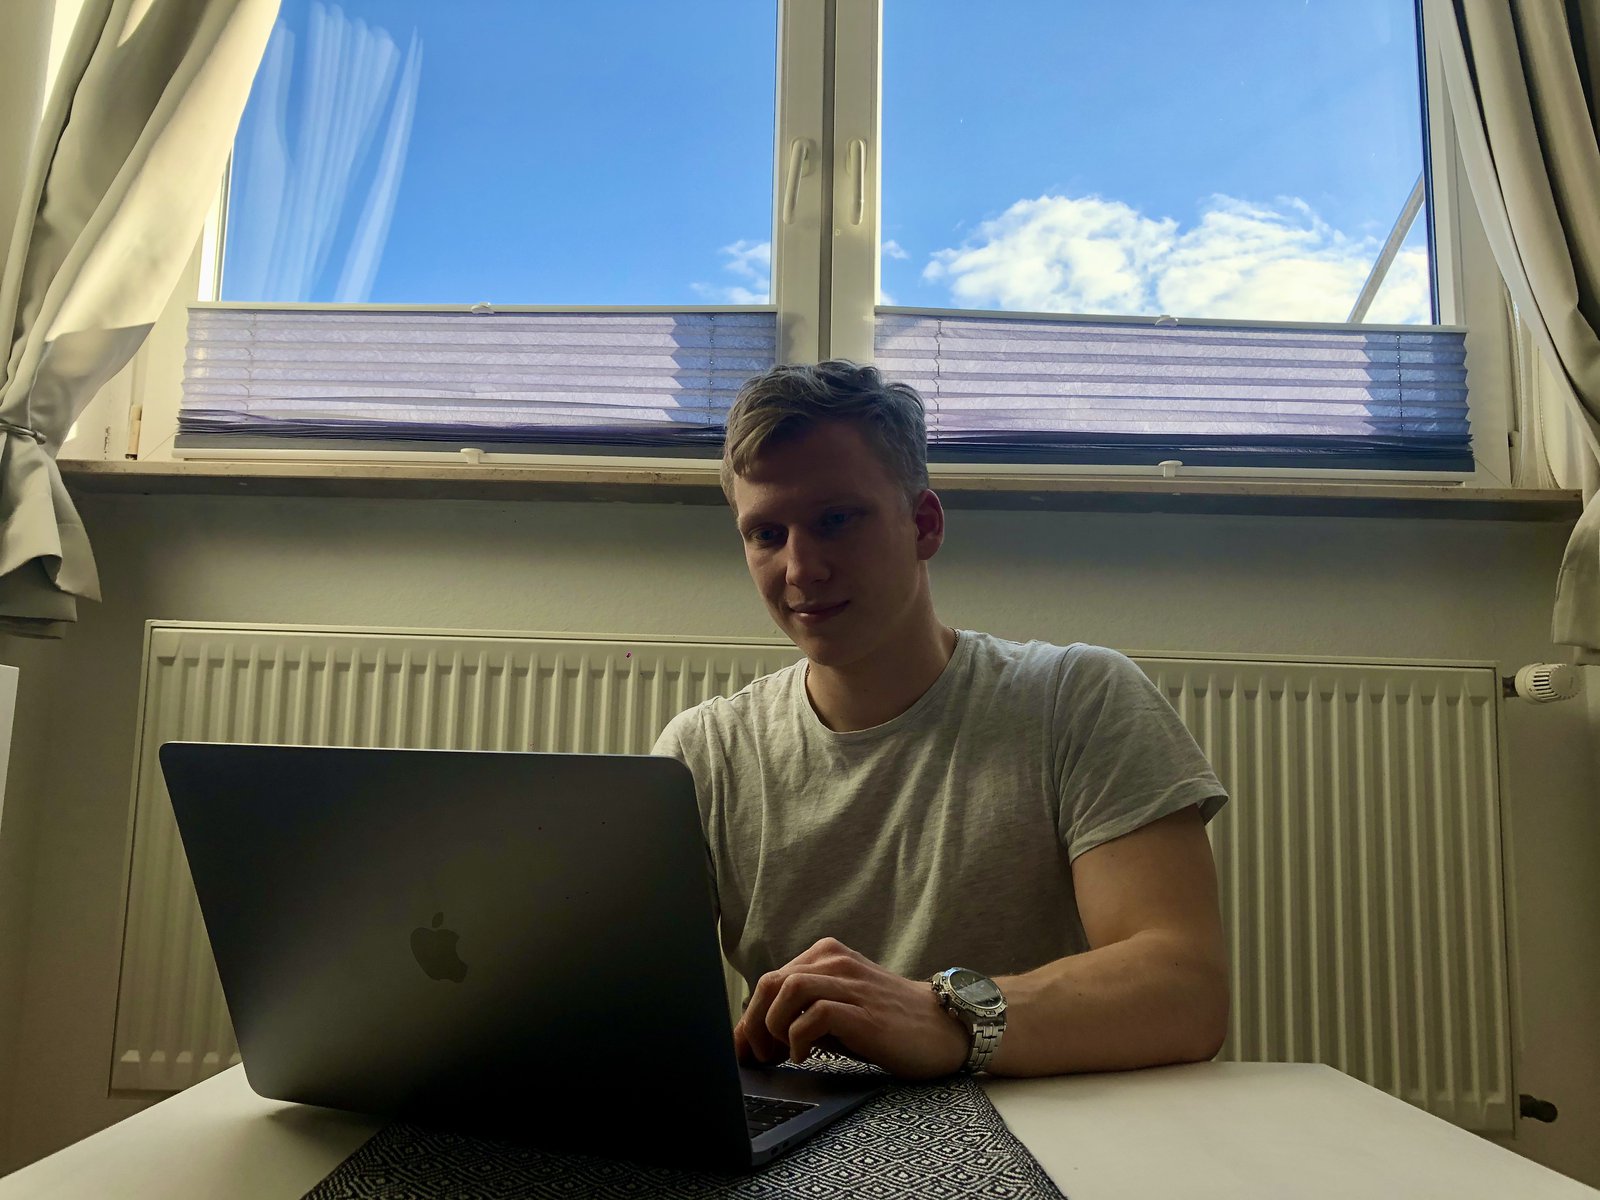 Ein Student sitzt vor seinem Laptop. Im Hintergrund kann man durch ein Fenster den Himmel sehen.